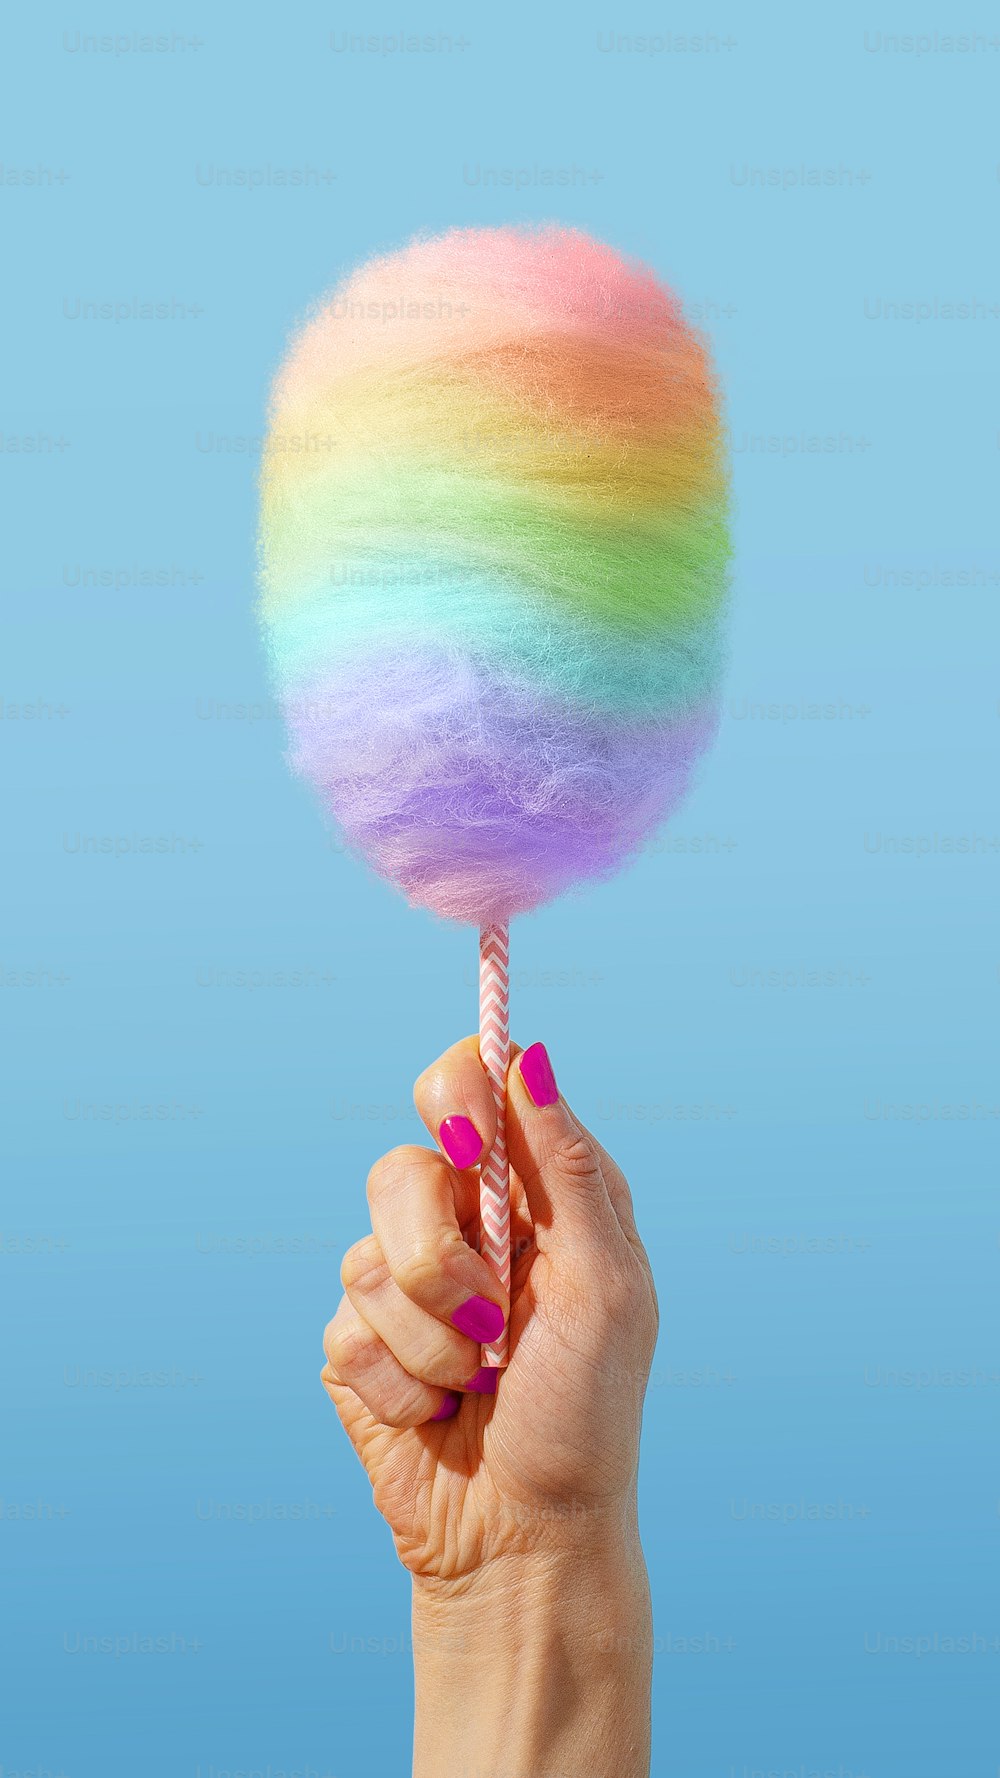 Una mano sosteniendo una piruleta arco iris en un palo